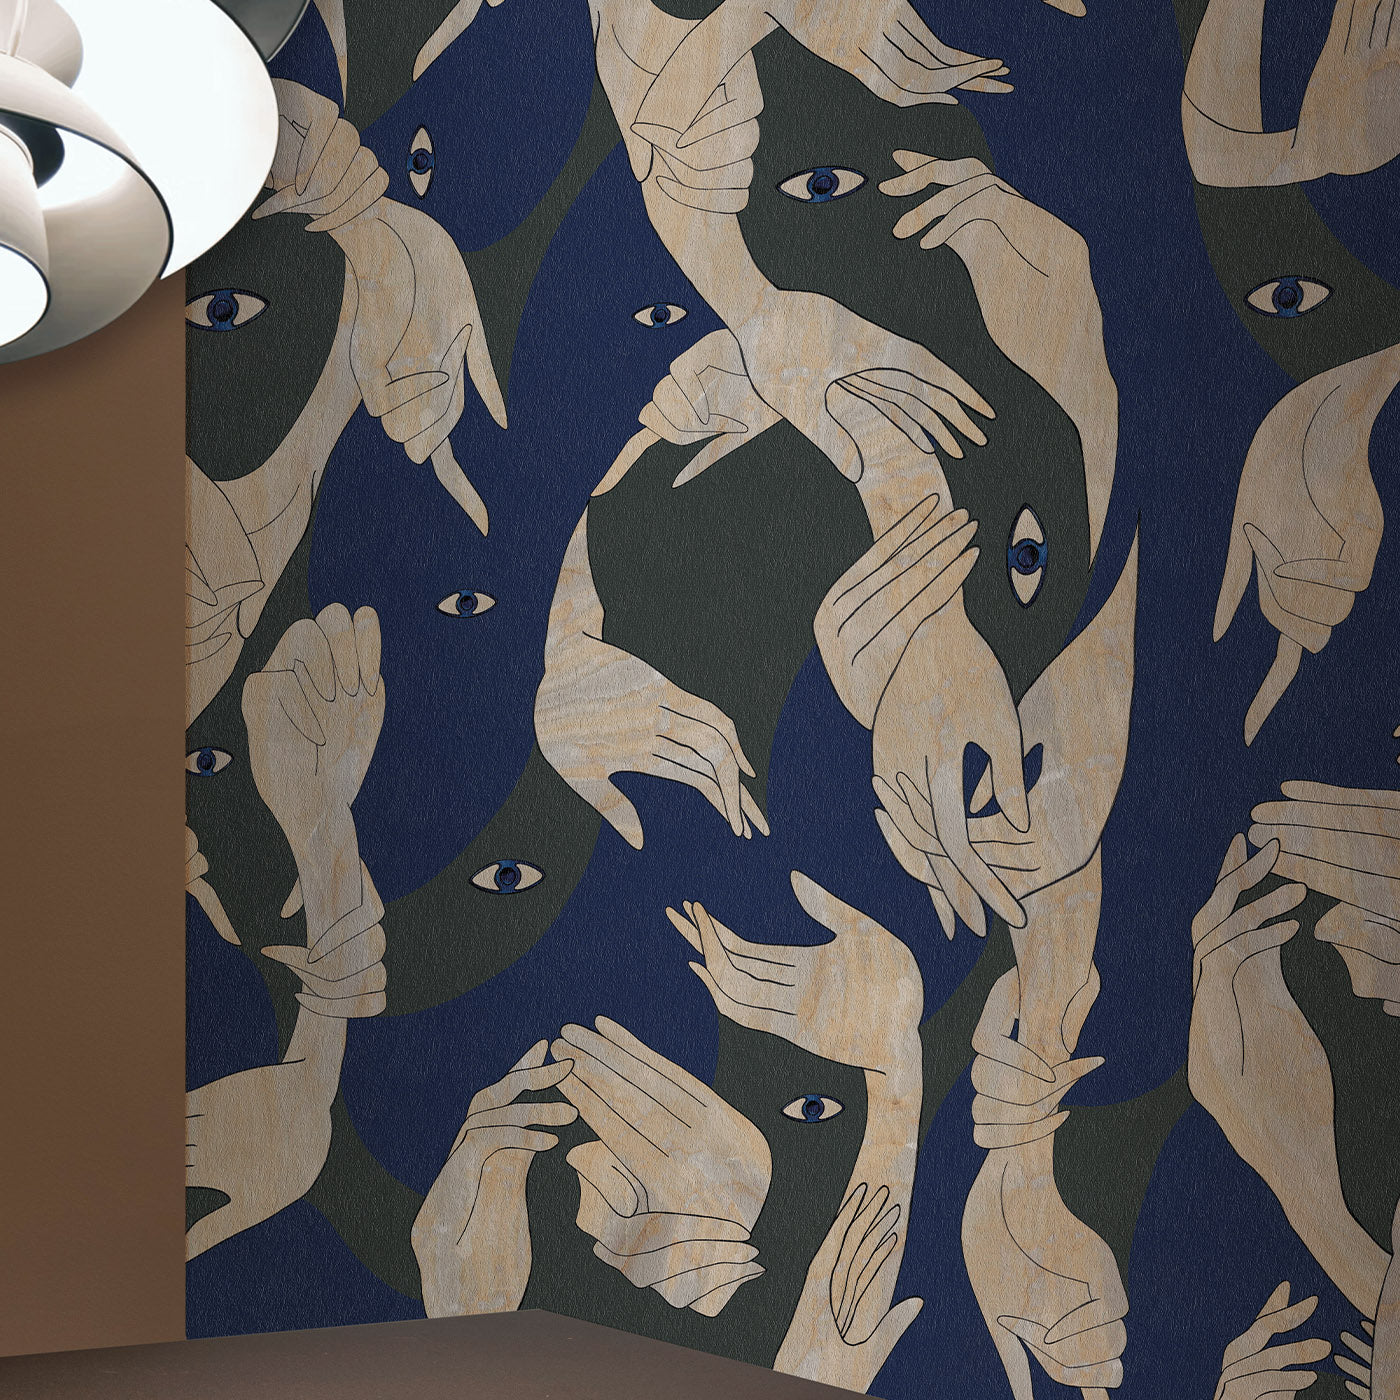 Uno, Nessuno Camouflage Scuro Wallpaper - Alternative view 1